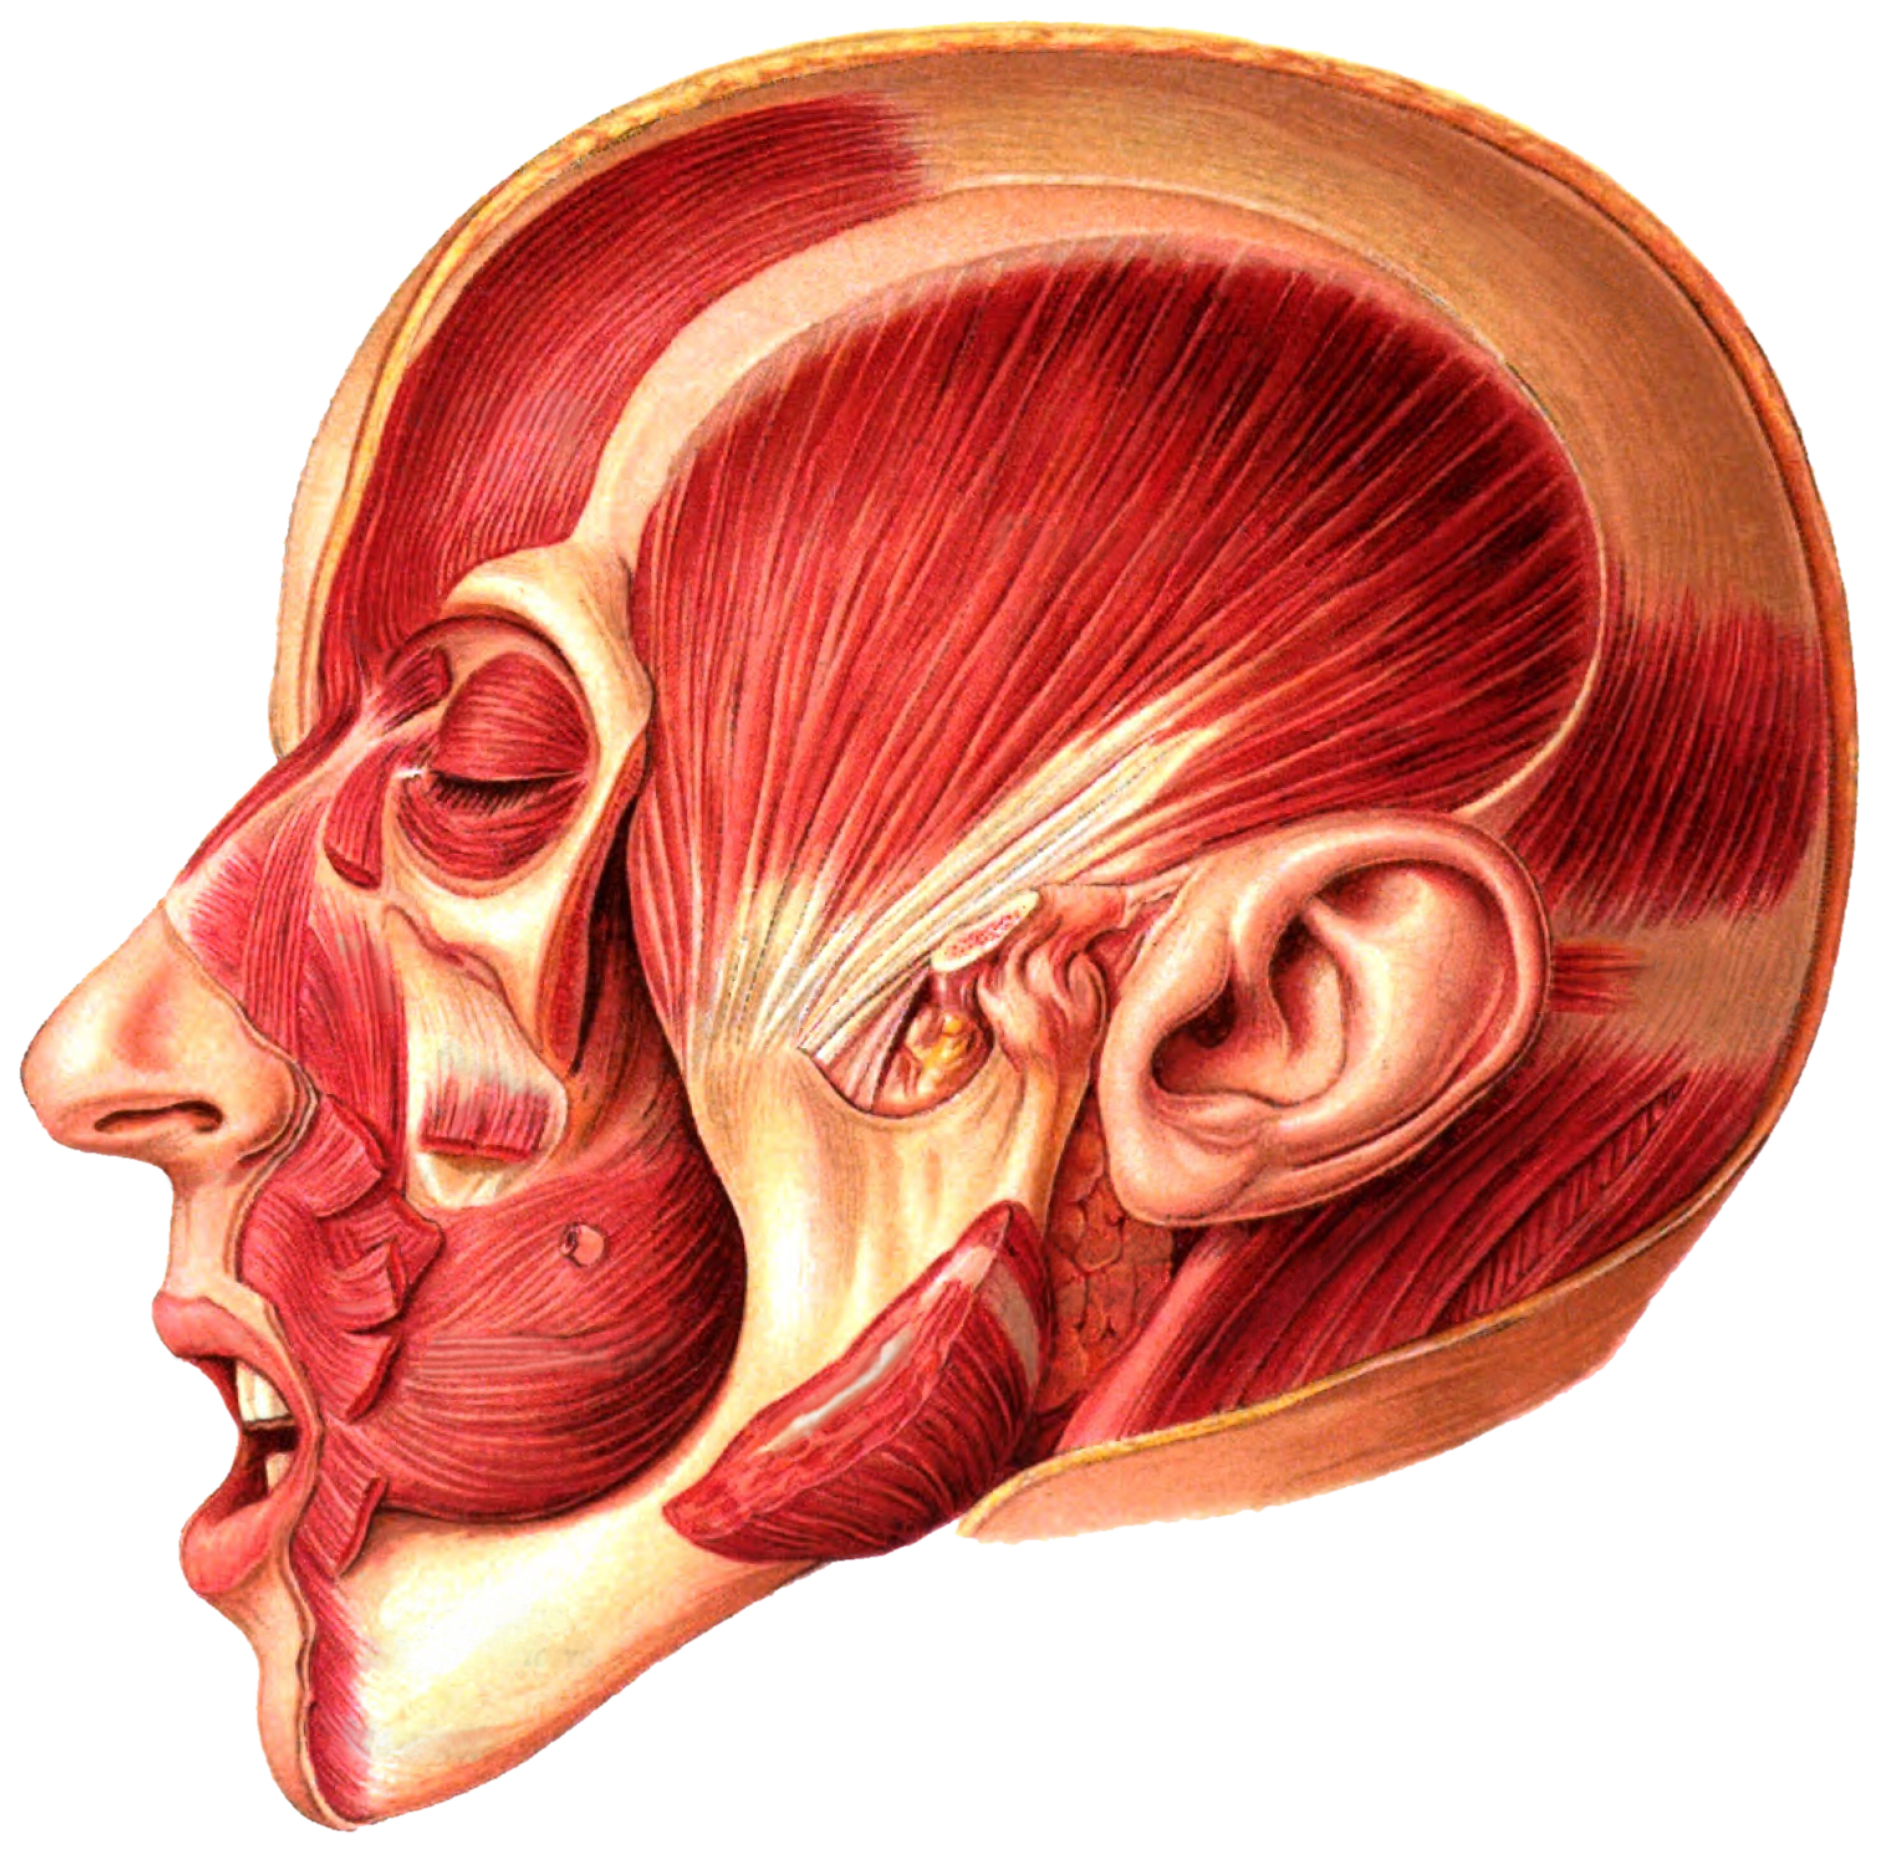 Мышцы за ухом фото расположение